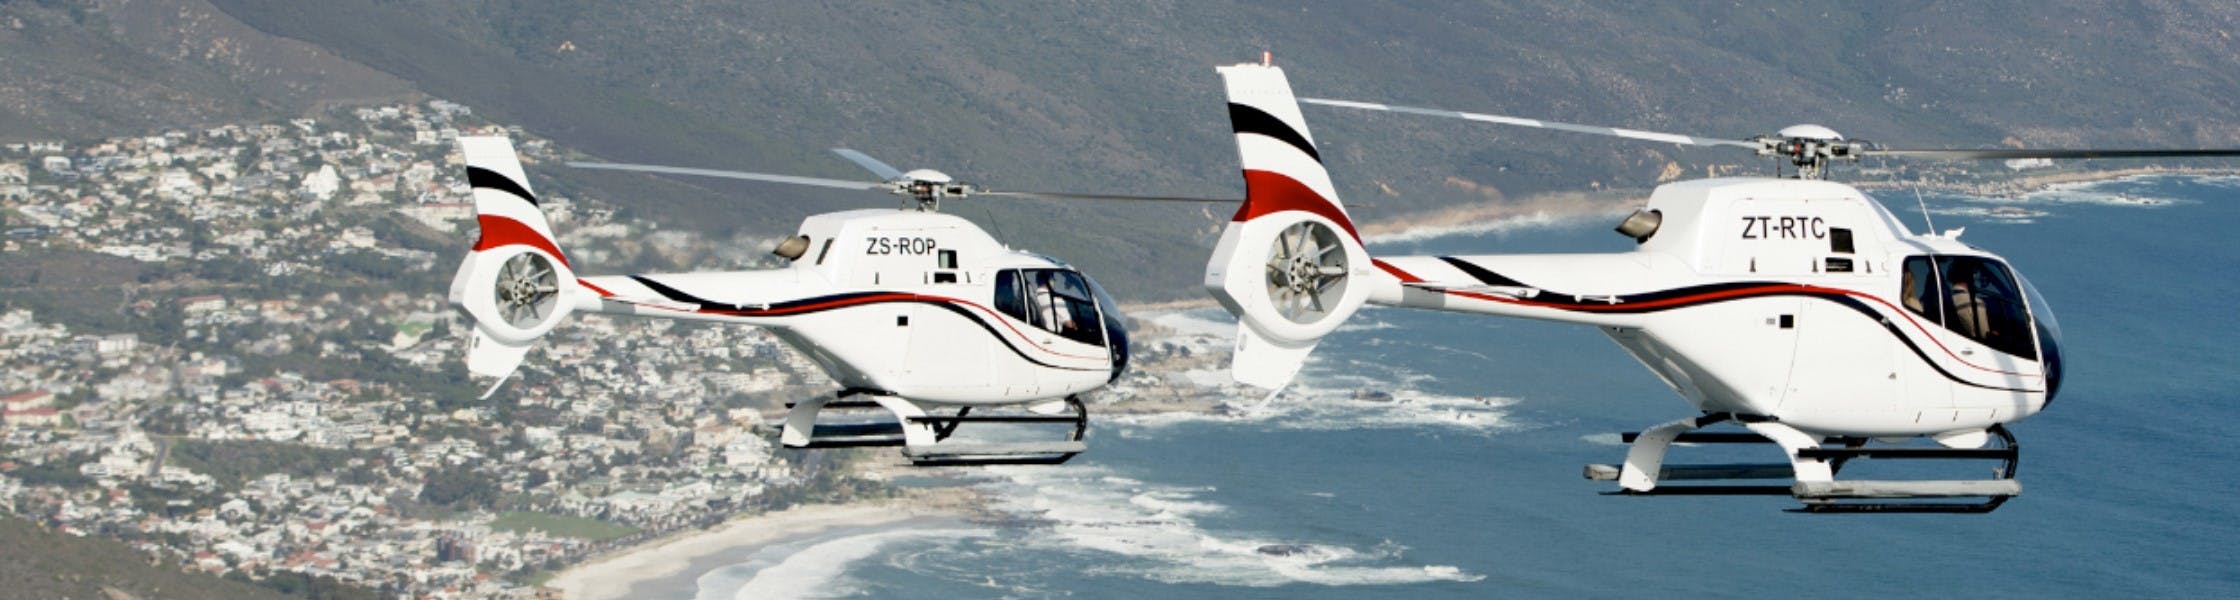 Cape Town Twelve Apostles 16 minuti di volo panoramico in elicottero